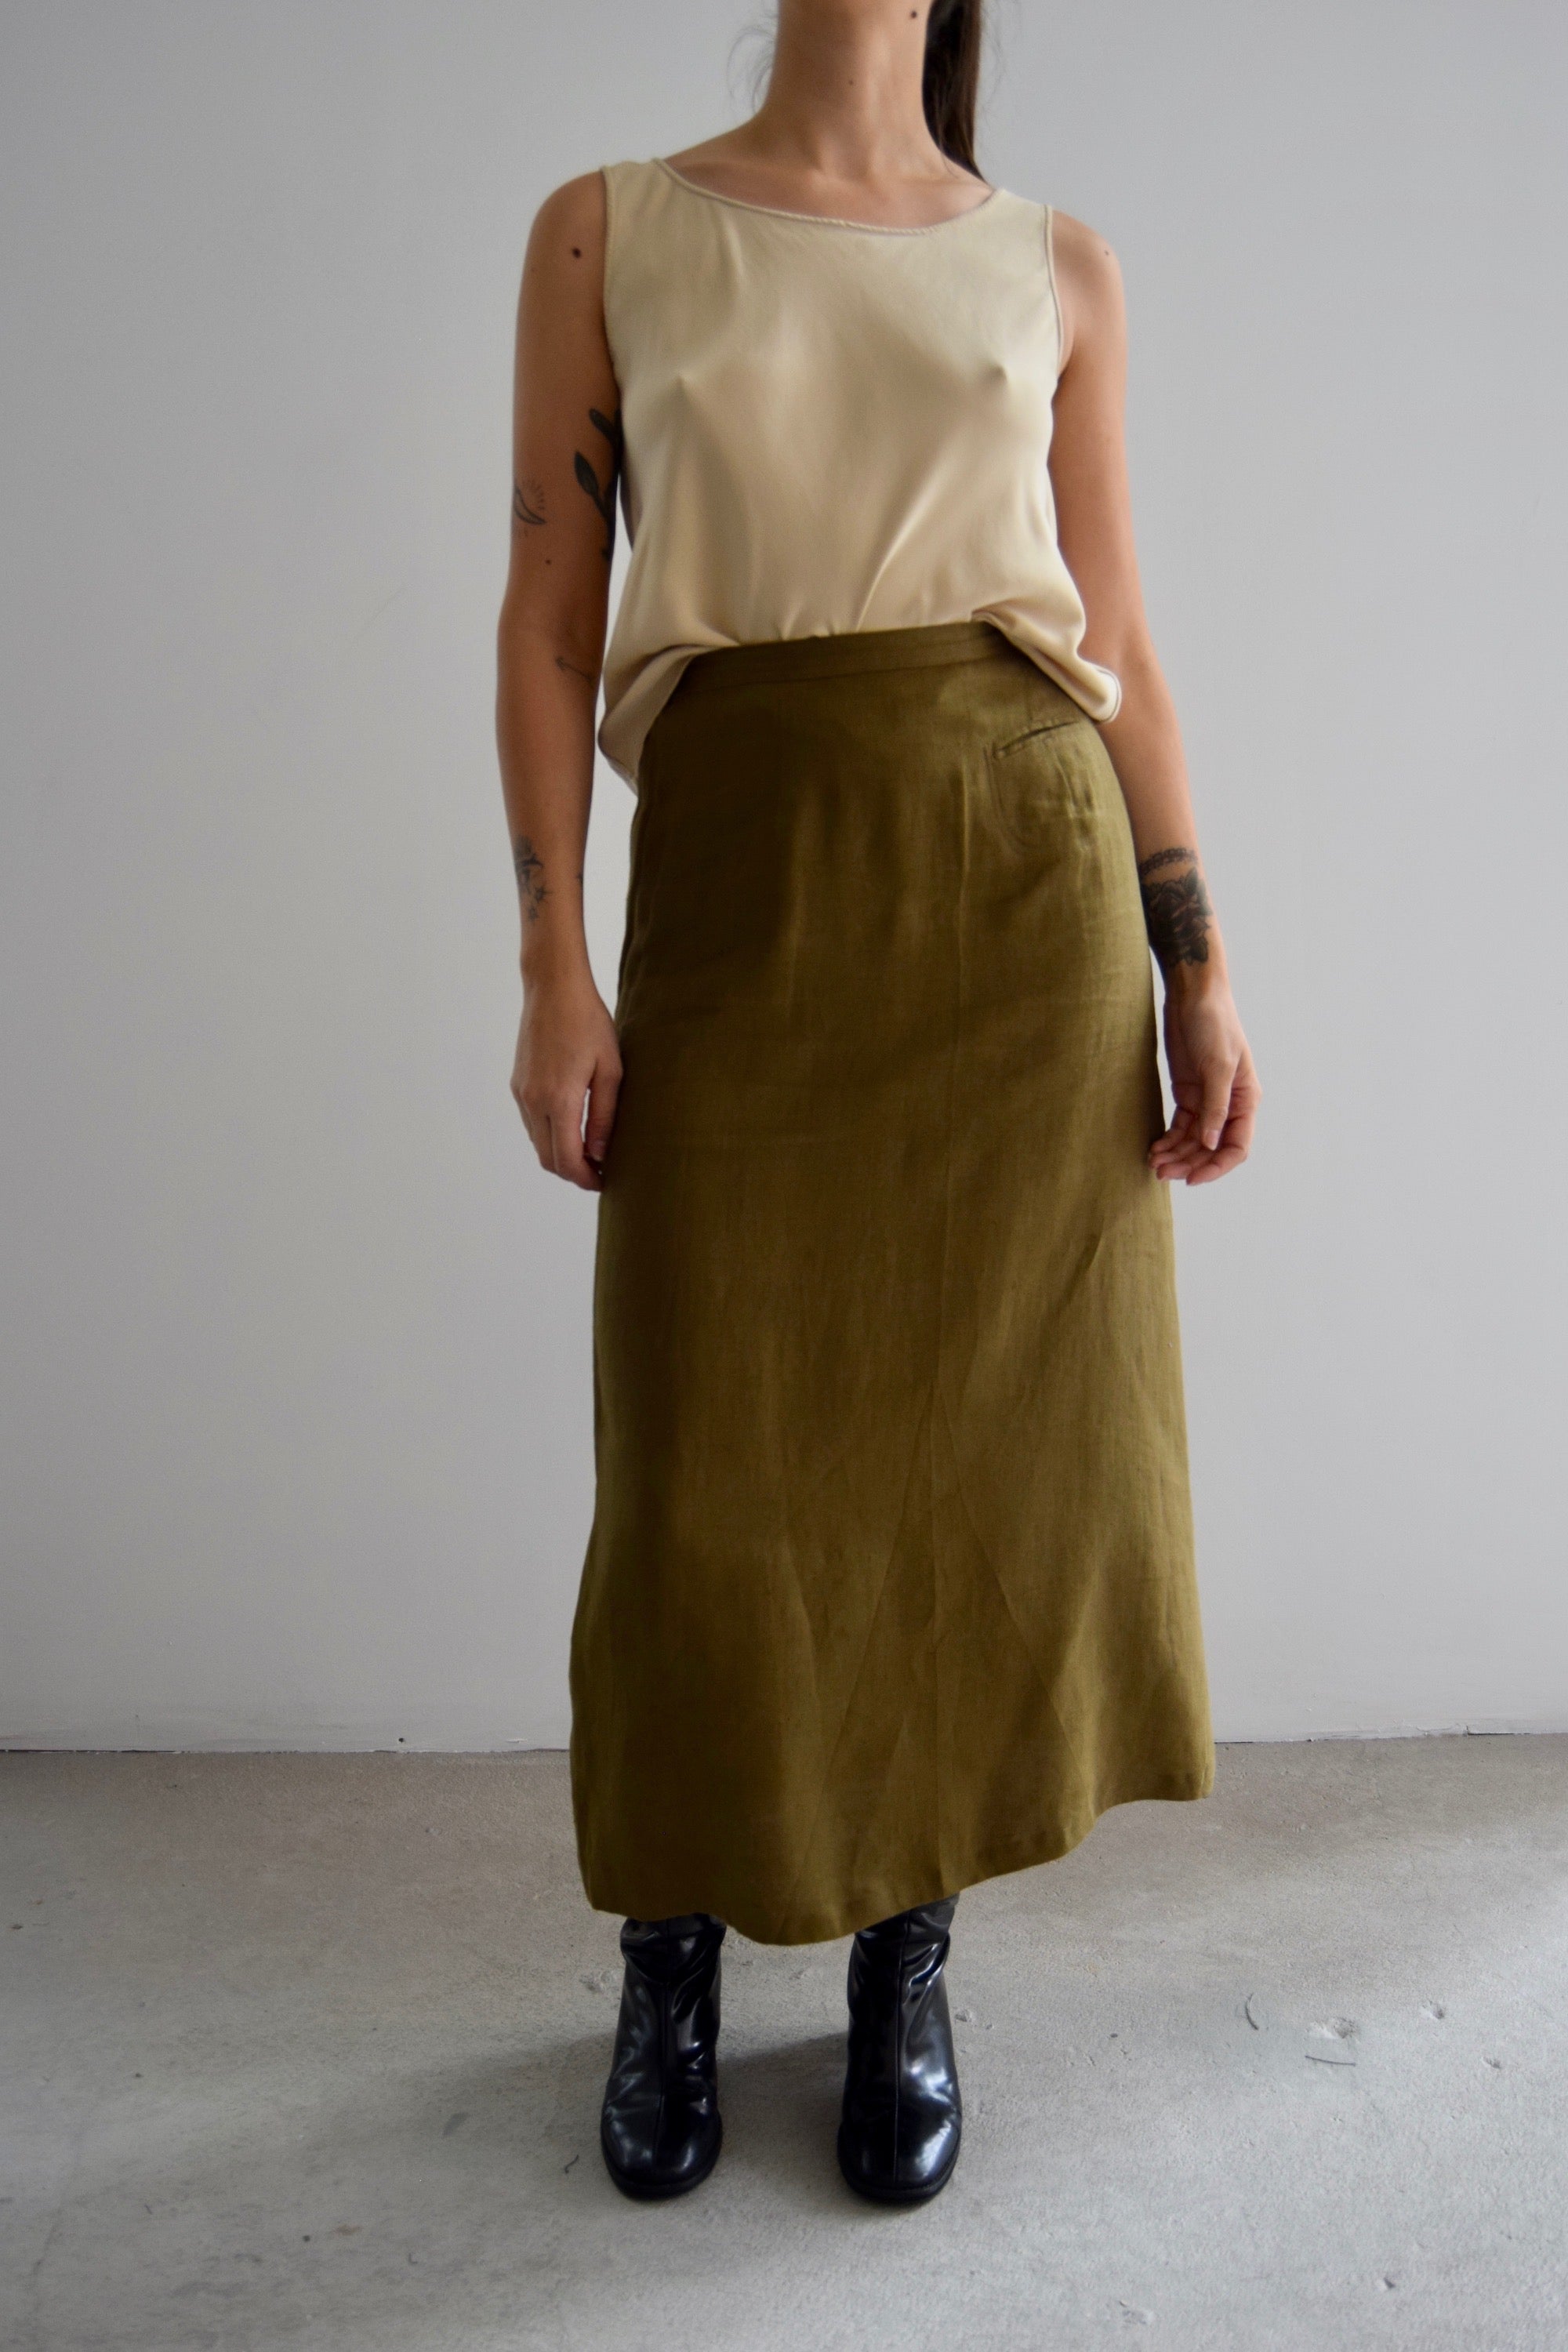 Vintage Olive Linen Long Skirt